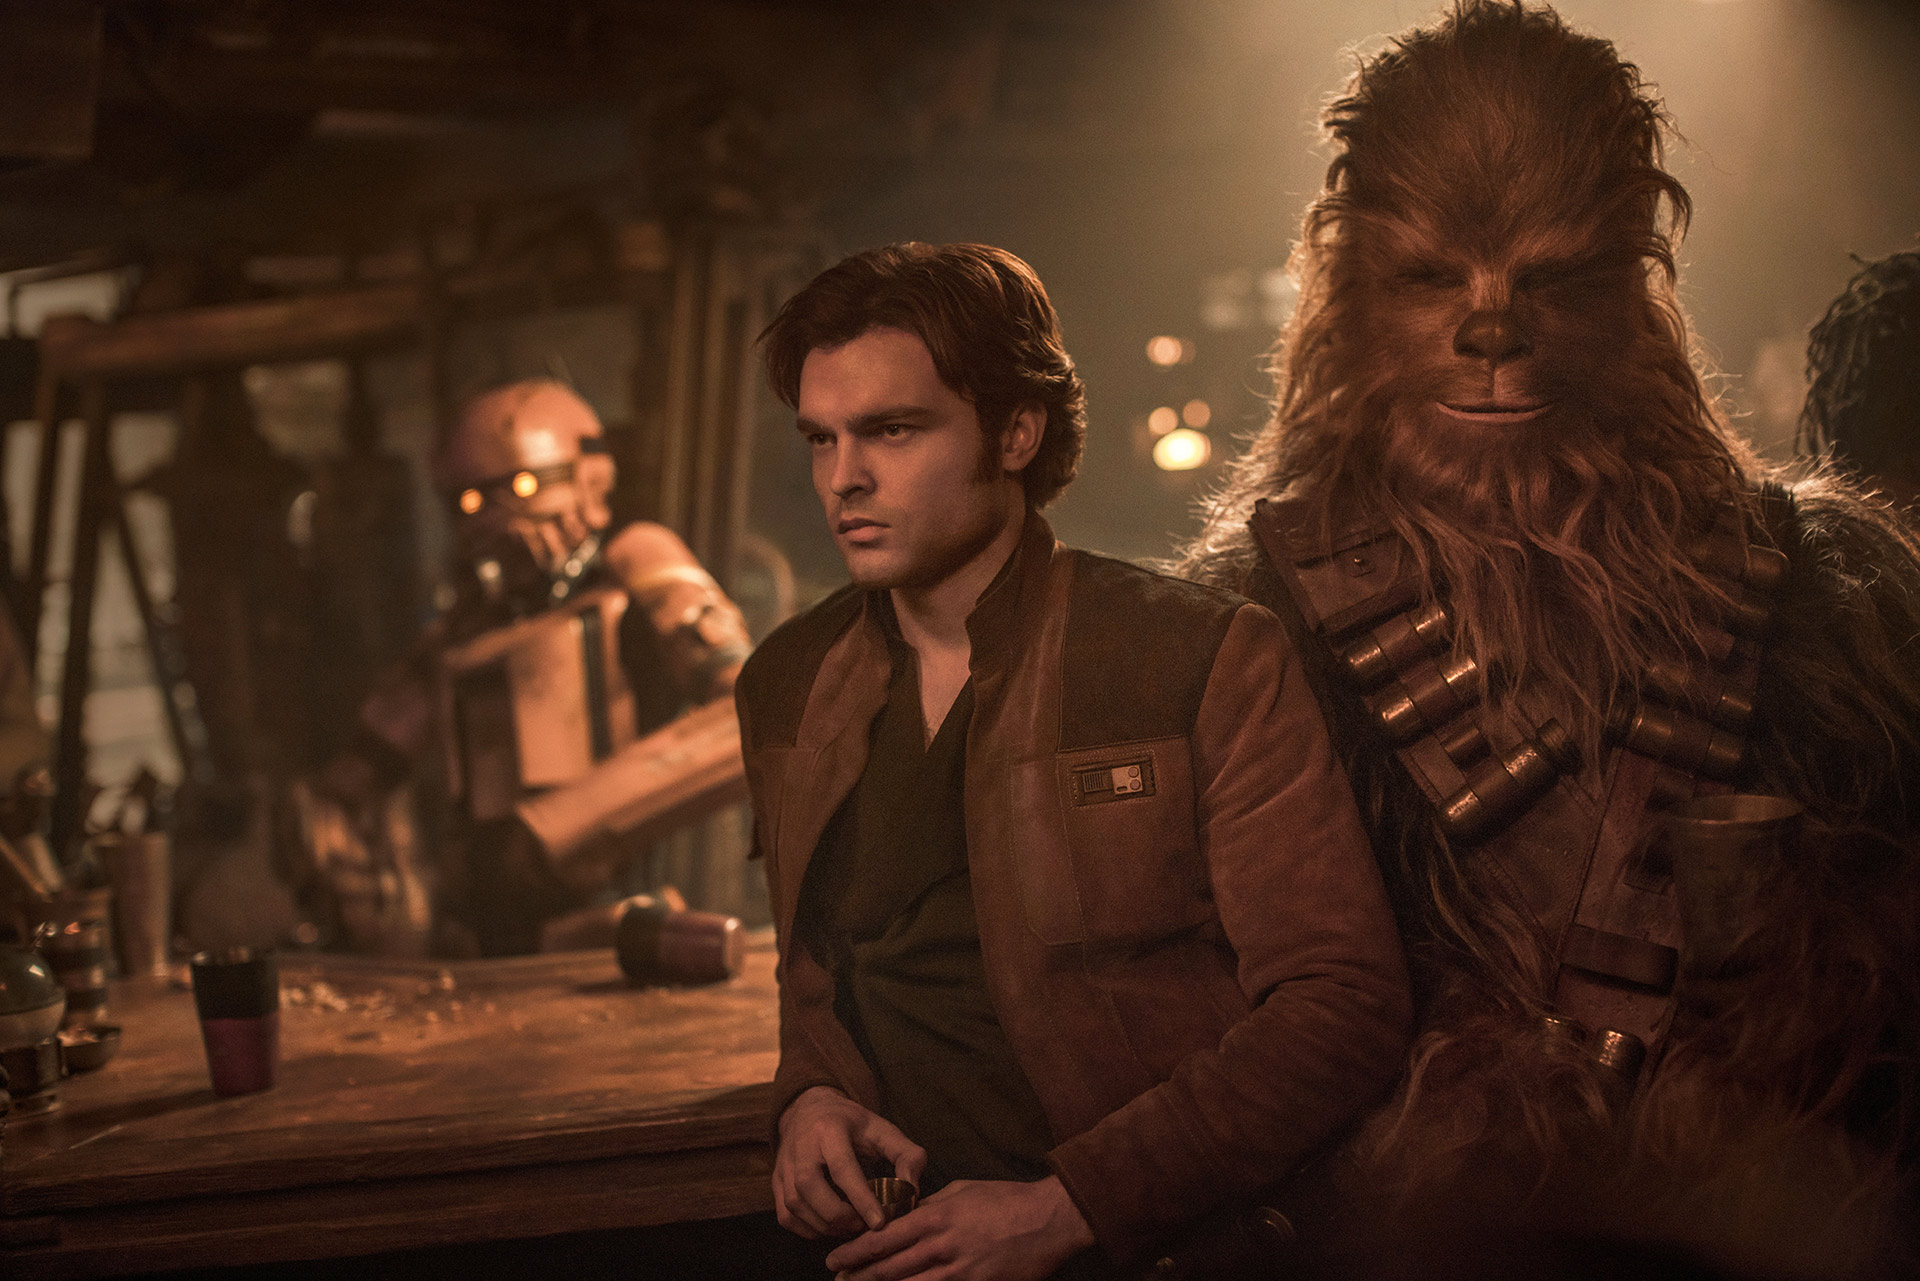 Szenenbild aus SOLO – A STAR WARS STORY: Han Solo und Chewbacca lehnen an einer Bartheke. Elmar Biebl fragt: Gibt es eine Zukunft für STAR WARS?